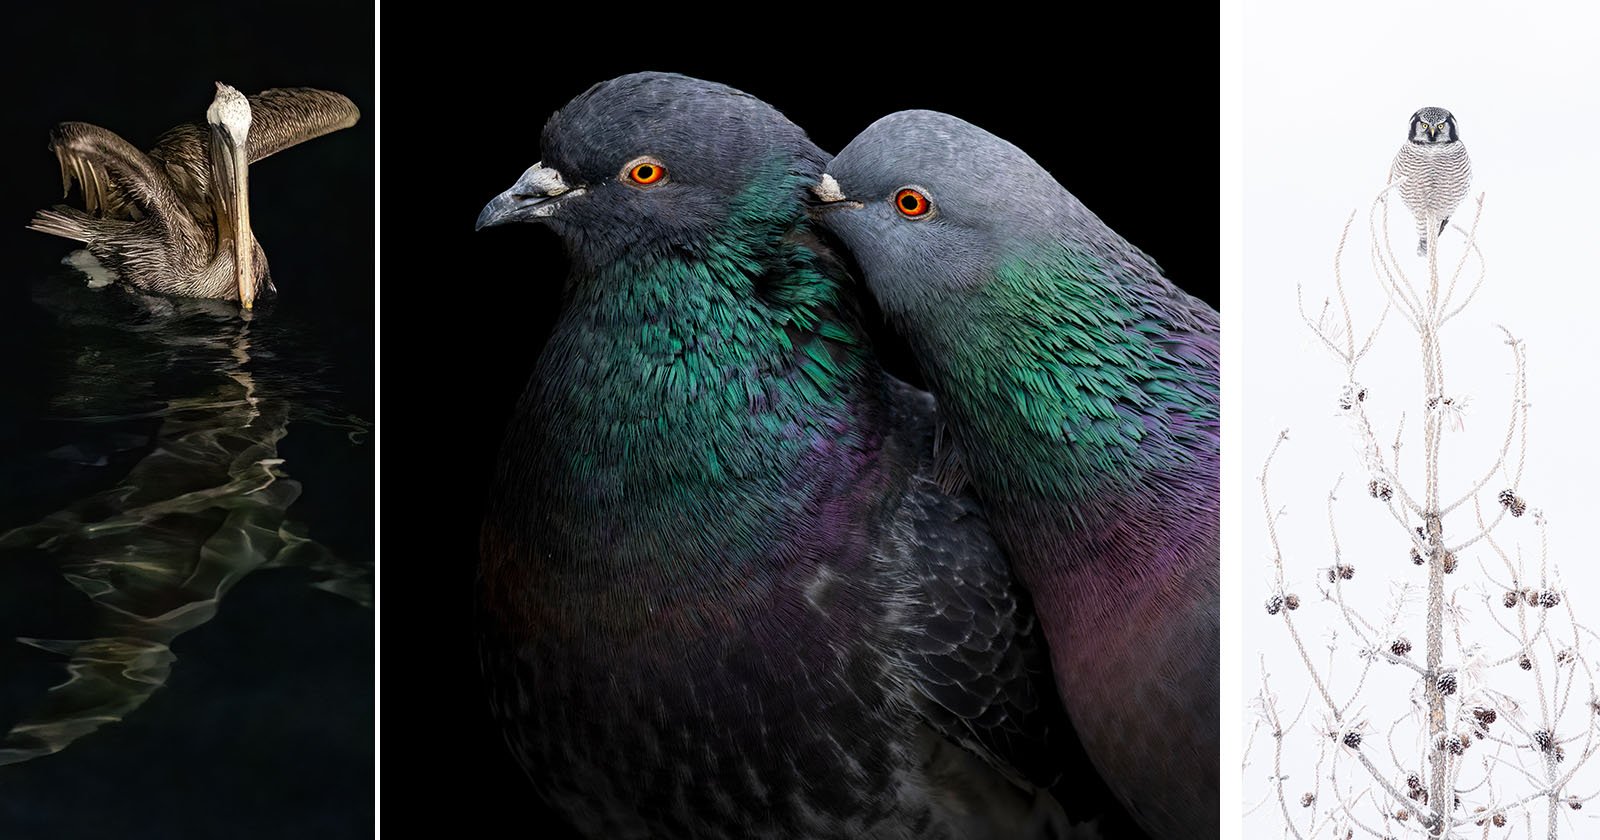  phenomenal photos from audubon photography awards 